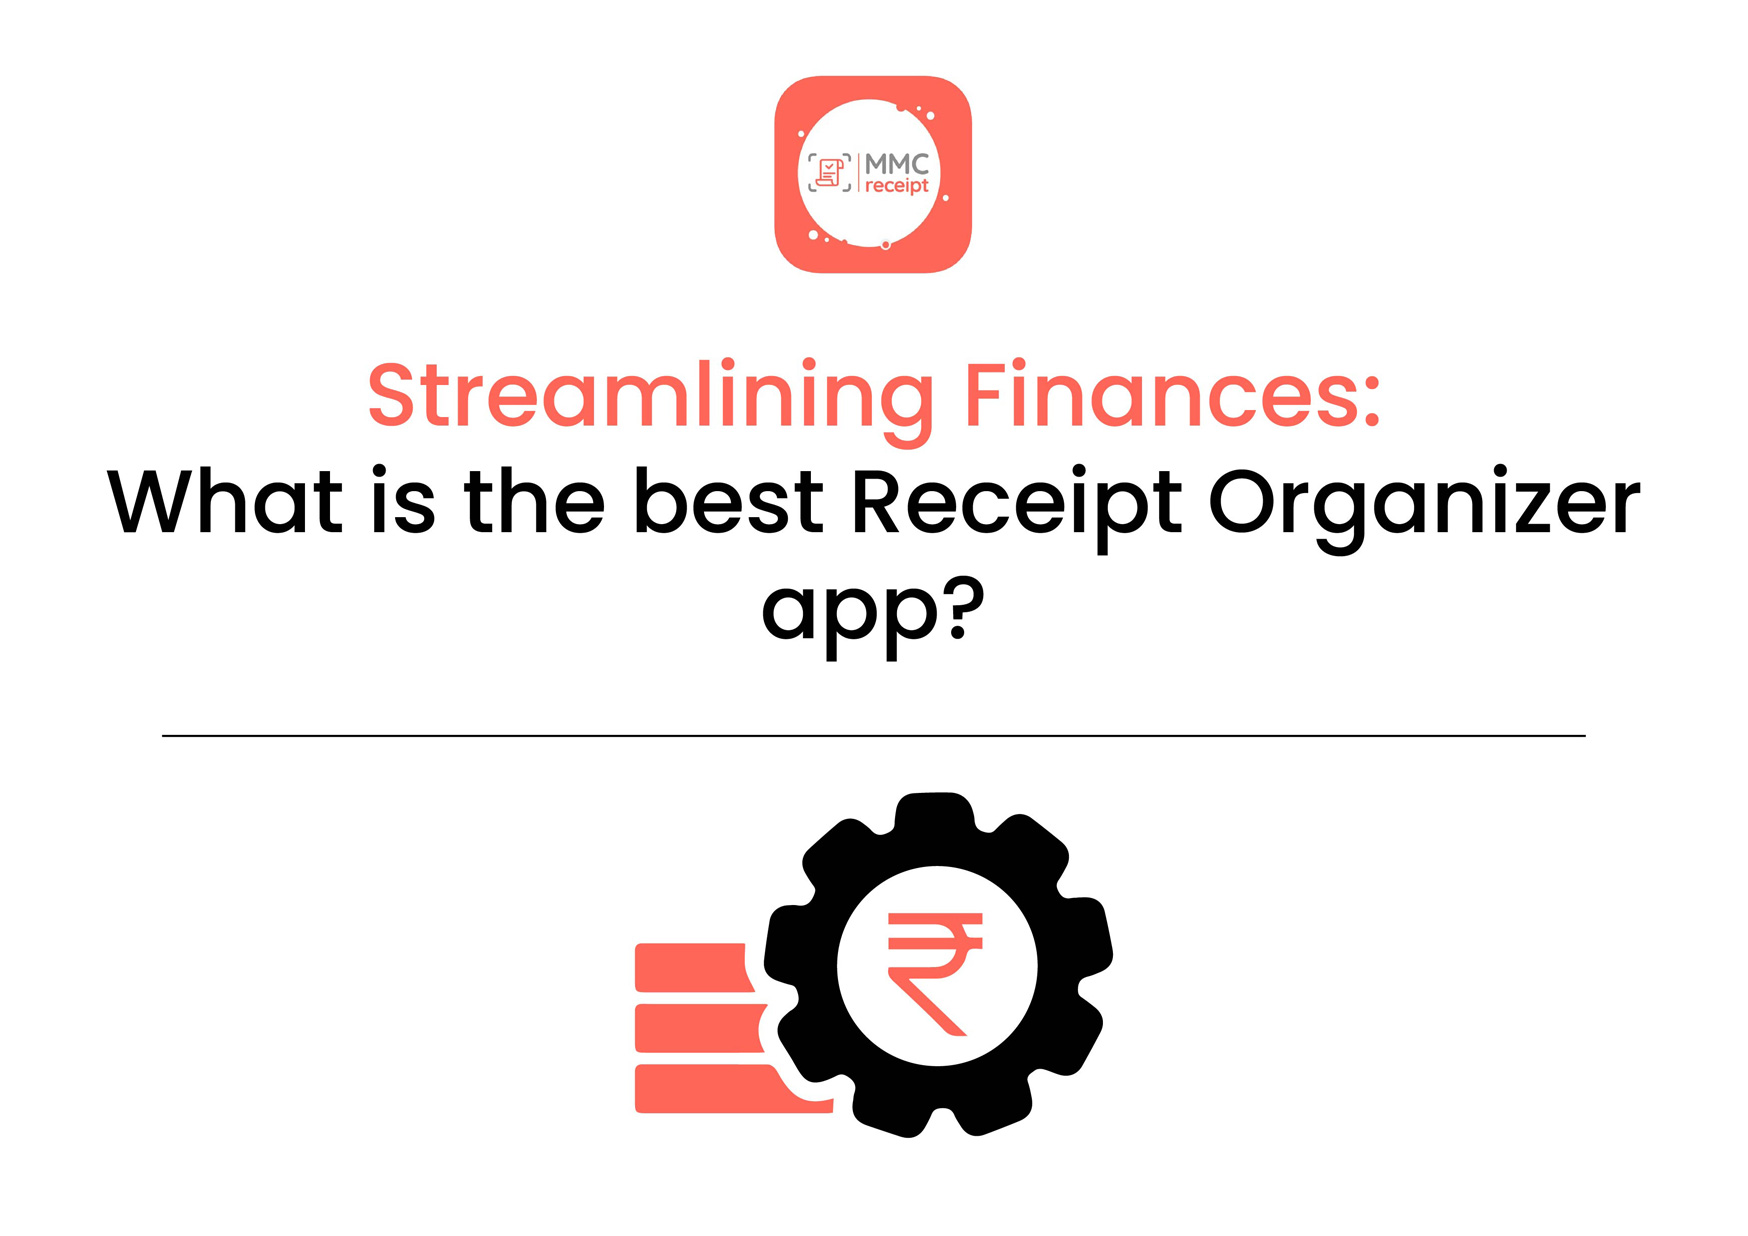 Streamlining Finances: What is the best Receipt Organizer app?